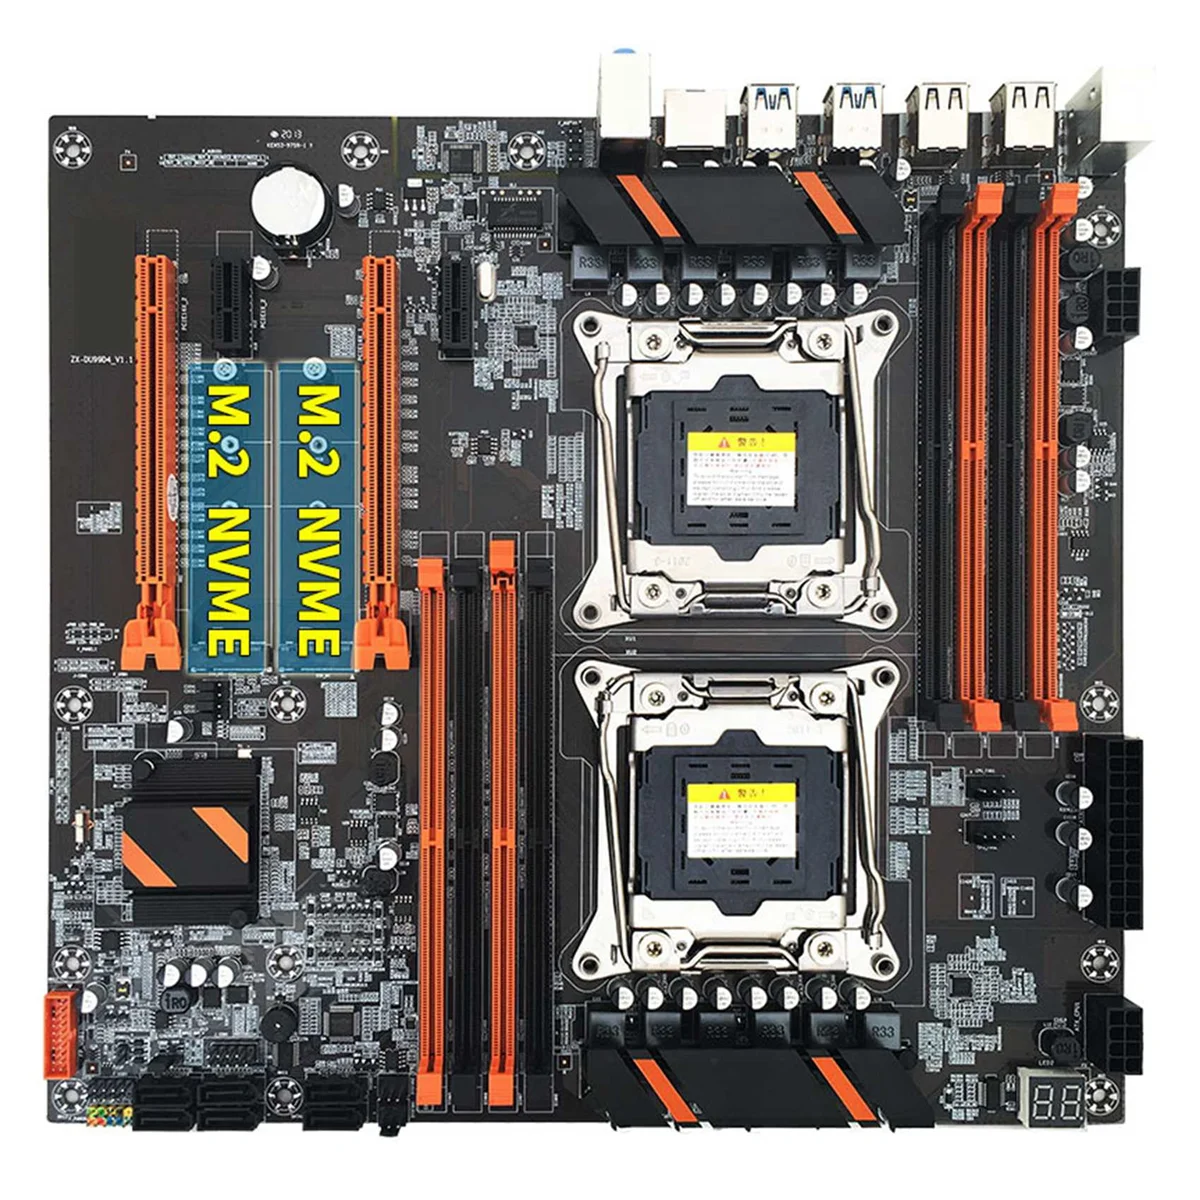 

X99 Dual CPU Motherboard+2XE5 2630 V3 CPU+SATA Cable+Baffle+Thermal Grease LGA 2011 8XDDR4 Slot Support 2011-V3 CPU